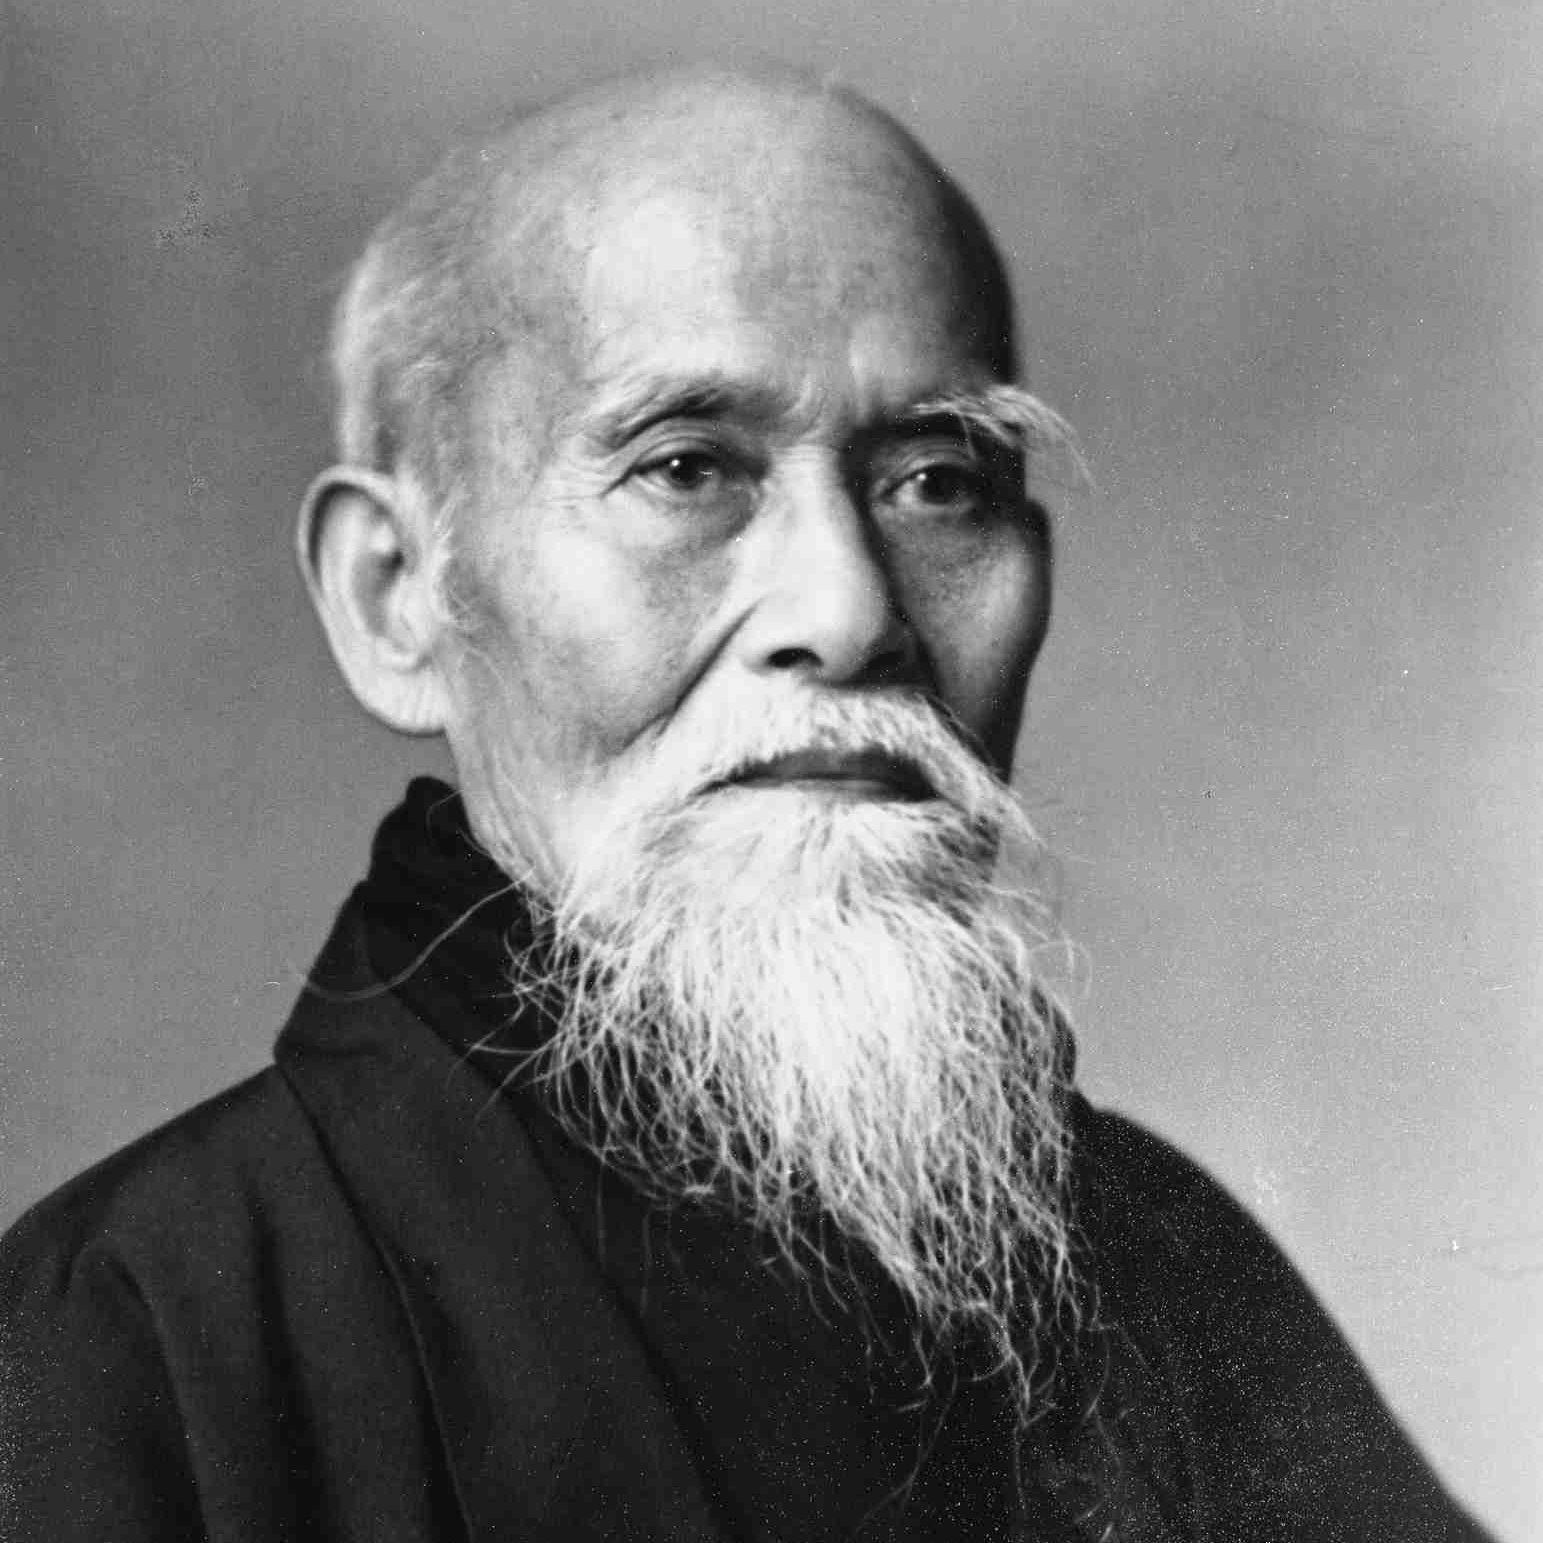 Morihei Ueshiba O'Sensei aïkido